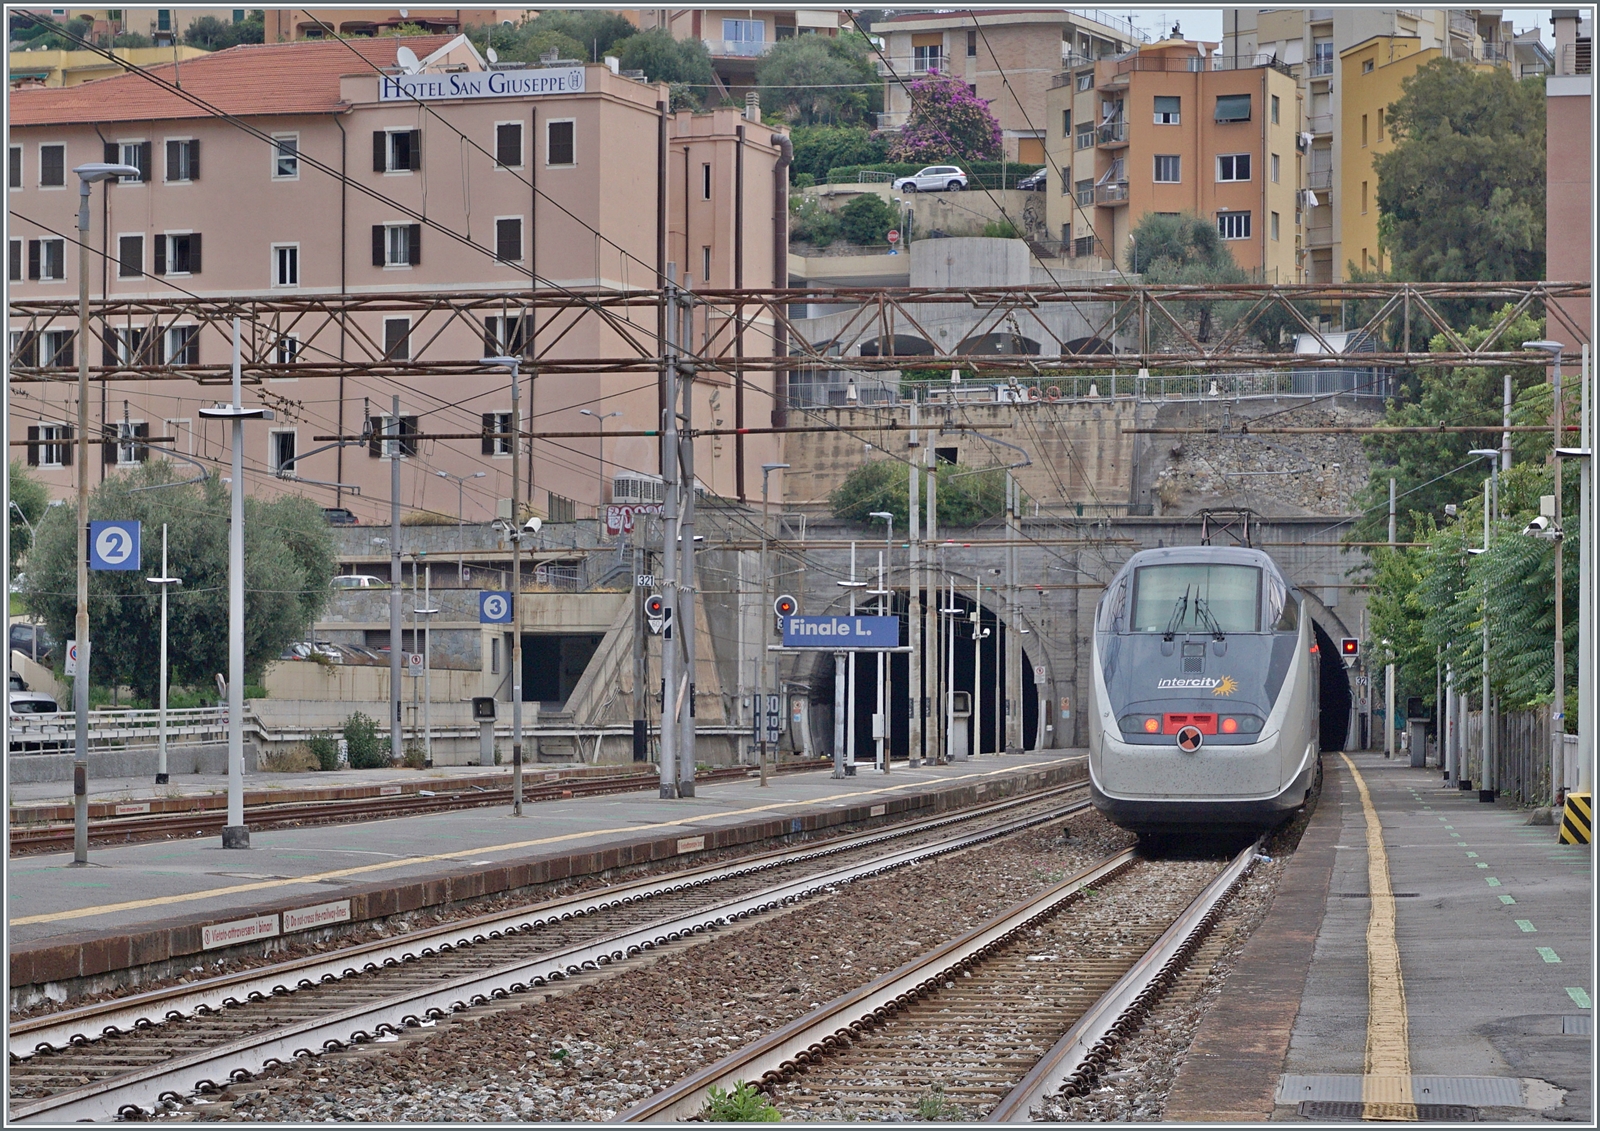 Als vor wenigen Jahren bei Cervia eine der schönsten Streckenabschnitte der Strecke Genova - Ventimiglia durch eine Tunnel-Variante ersetzt wurden, reiste im Vorfeld nochmals zahlreiche Fotografen an. Die 1868 eröffnete Strecken Genova - Savona. bzw. 1972 in Betrieb genommene Fortsetzung Savona Ventimiglia führte vielerorts durch eine schwierige Topografie und wurde grösstenteils dem Meer entlang und durch die Ortschaften trassiert. In den 1960er genügte die Einspur-Strecke dem Meer entlang nicht mehr dem zunehmenden Verkehr, so das im Raum Genova erste Neubautrassierungen erfolgen. 1977 folgte mit dem Abschnitt Varazzo - Finale Ligure ein erste länger Neubauabschnitt. Mit der Zeit folgten weiter westlich weitere, doch in Finale Ligure treffen sich nun der erste Neubauabschnitt mit dem letzten noch ursprünglichen Streckenabschnitt. Dies ist auch das Motiv der Bilder von Finalie Ligure, hier verlässt der FS Trenitalia IC 631 Finale Ligure und fährt in die nun seit 1977 neu trassierte Strecke ein, welche an den beiden Doppelspurportalenden der  Gallerie San Bernardino  zu erkennen ist. Die  Gallerie San Bernardino  ist 730 Meter lang, nach einem kurzen offenen Abschnitt folgt dann die 6514 Meter lange  Galleria San Giacomo.  

16. September 2023